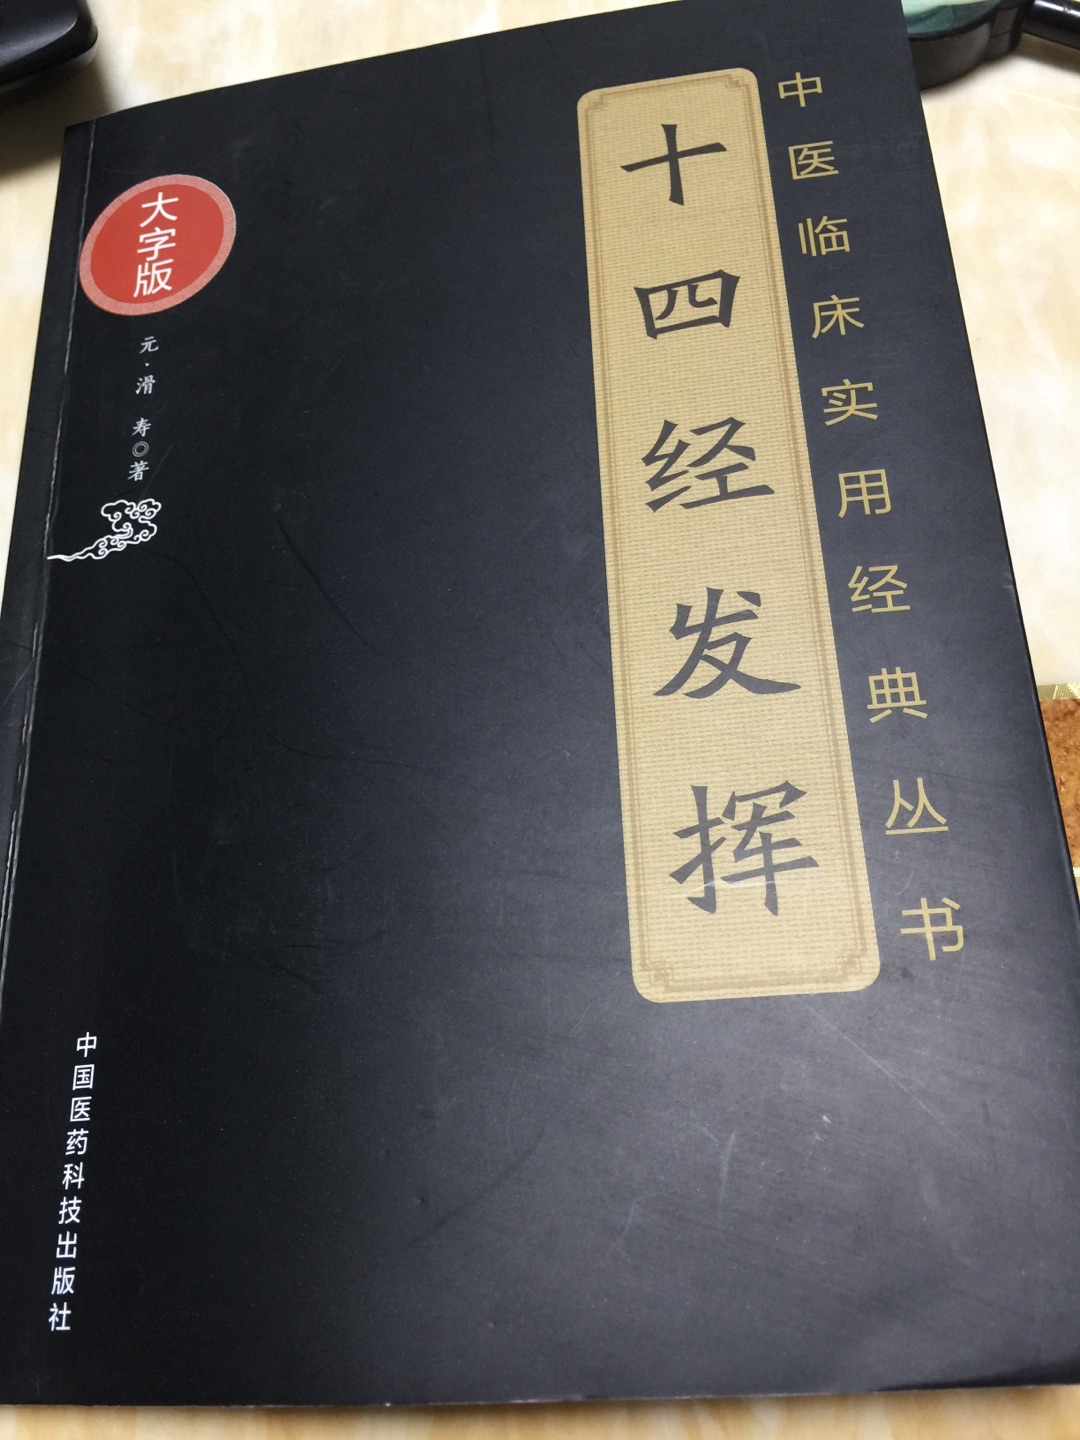 图文并茂，字迹清晰，内容丰富，不错的中医经典之作！